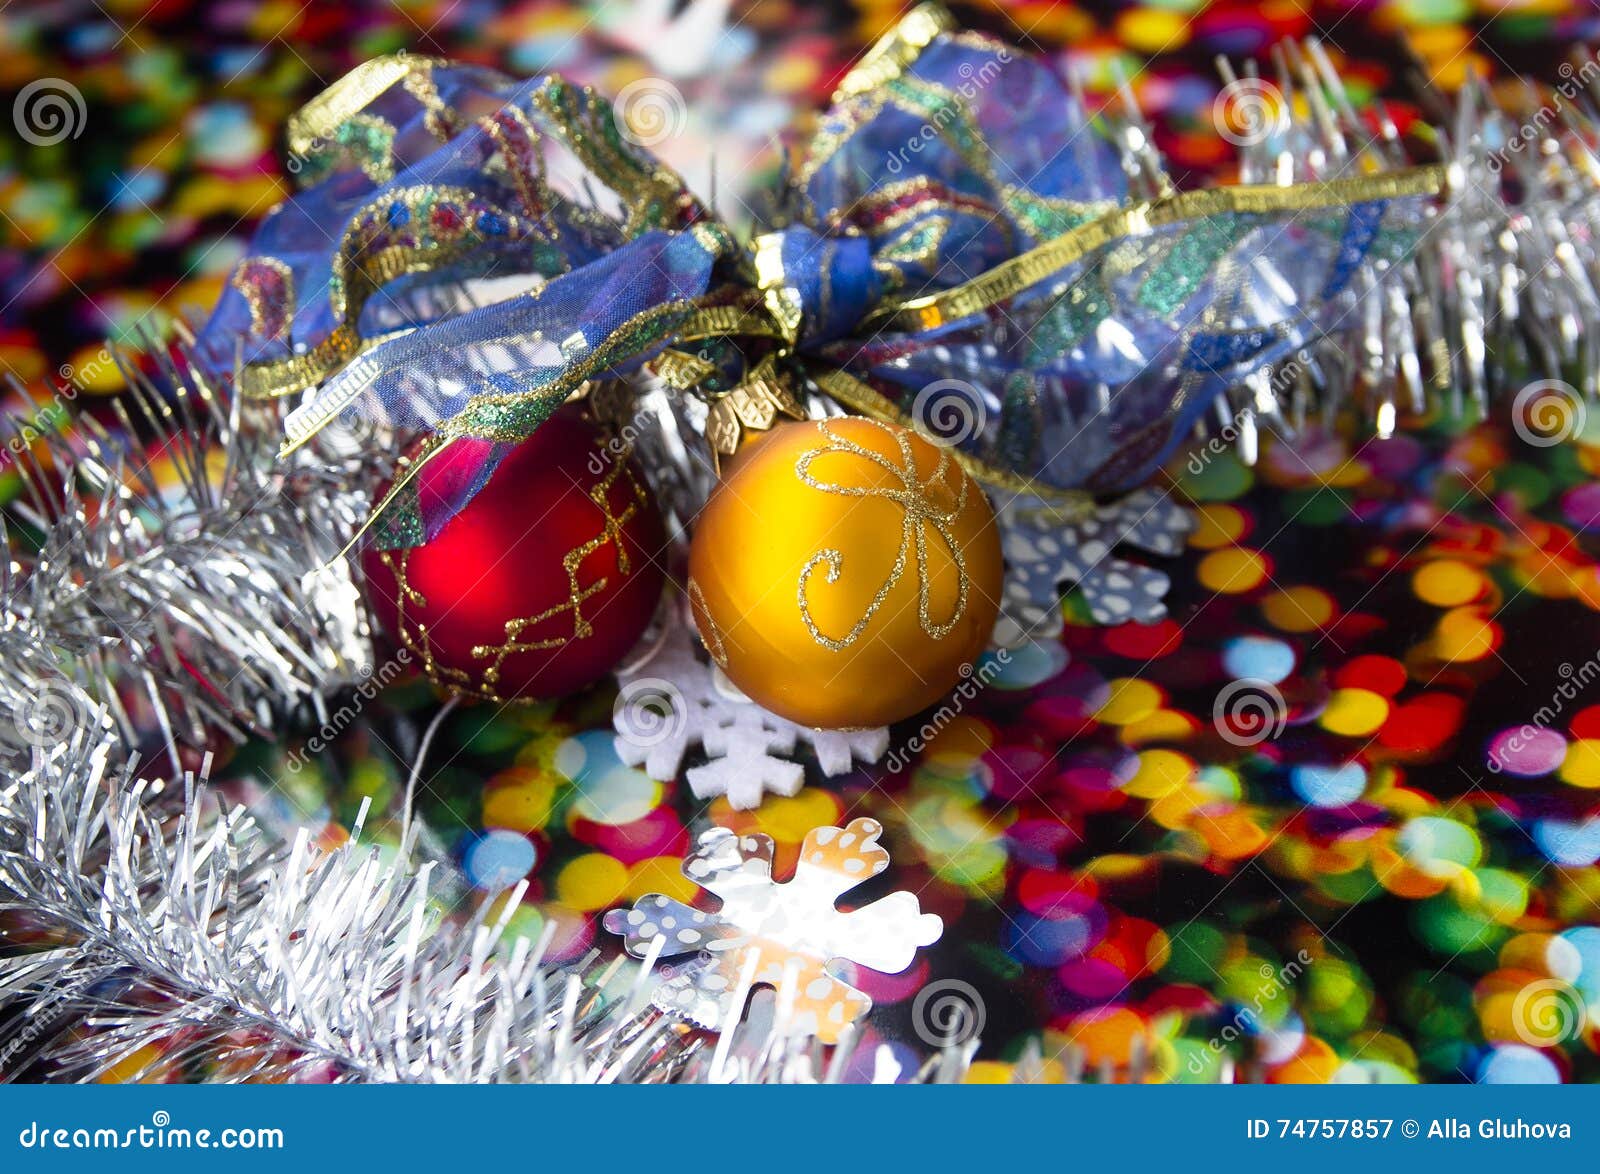 Hristmas Card, New Year , Christmas Stock Image - Image of ball ...